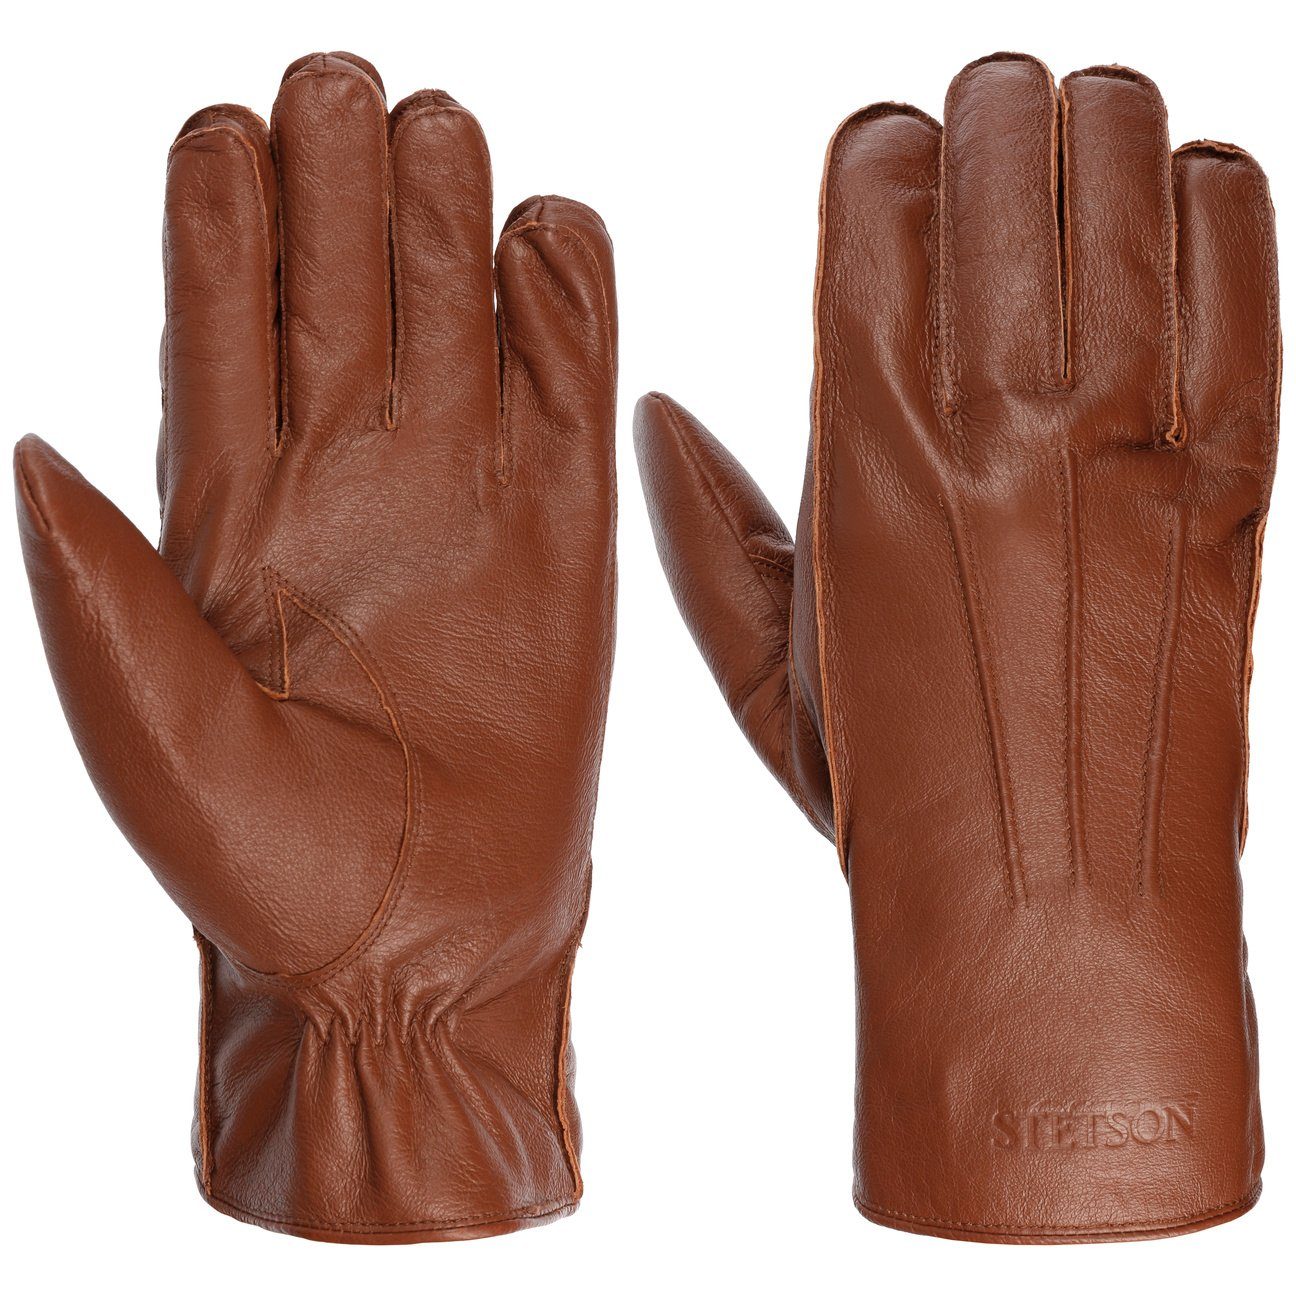 Stetson Lederhandschuhe mit Futter braun | Handschuhe